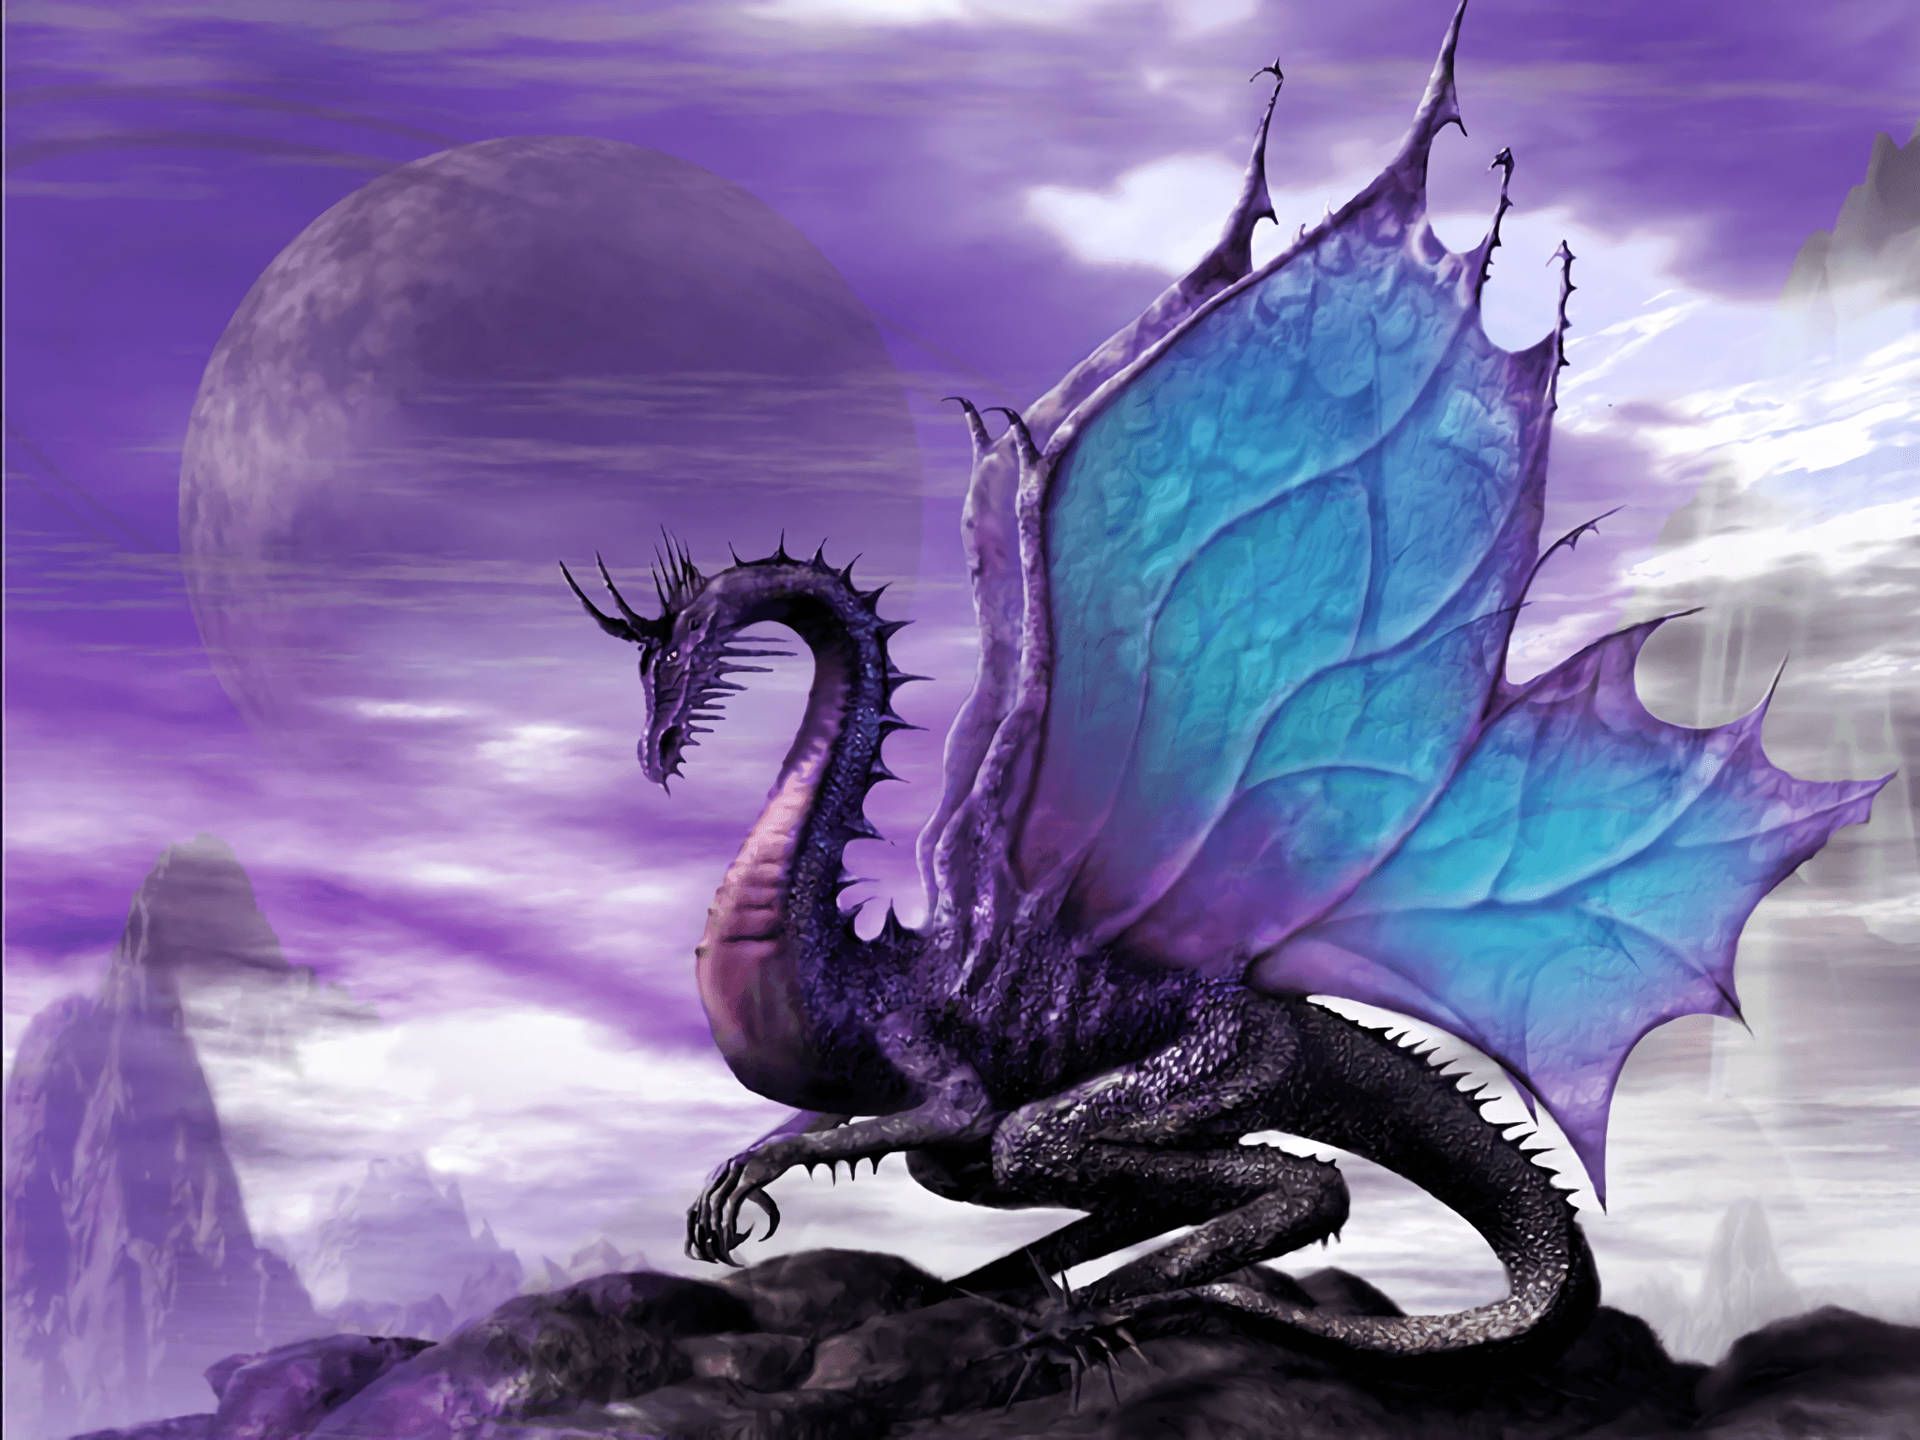 Free Dragon Wallpaper Downloads, Dragon Wallpaper for FREE